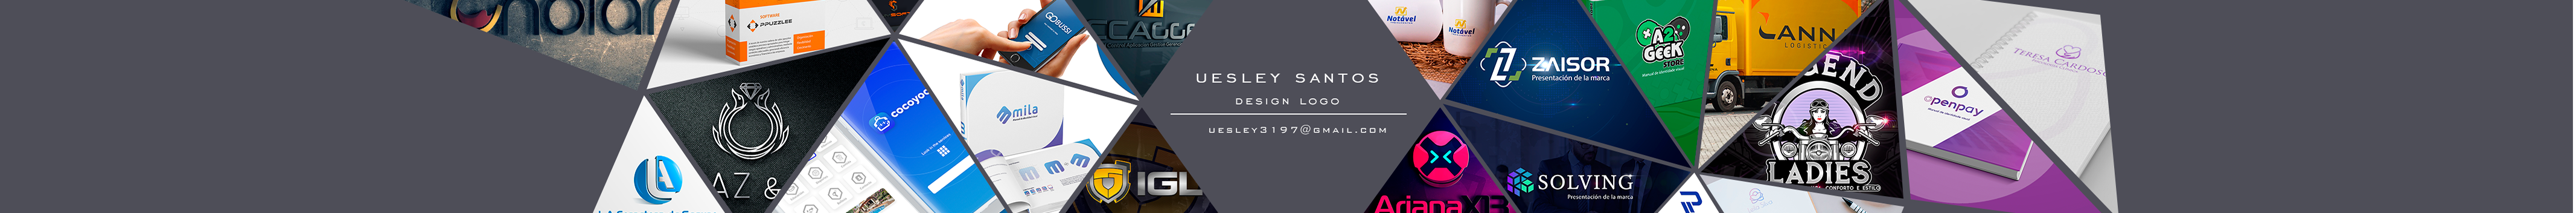 Banner del profilo di Uesley Melo dos Santos